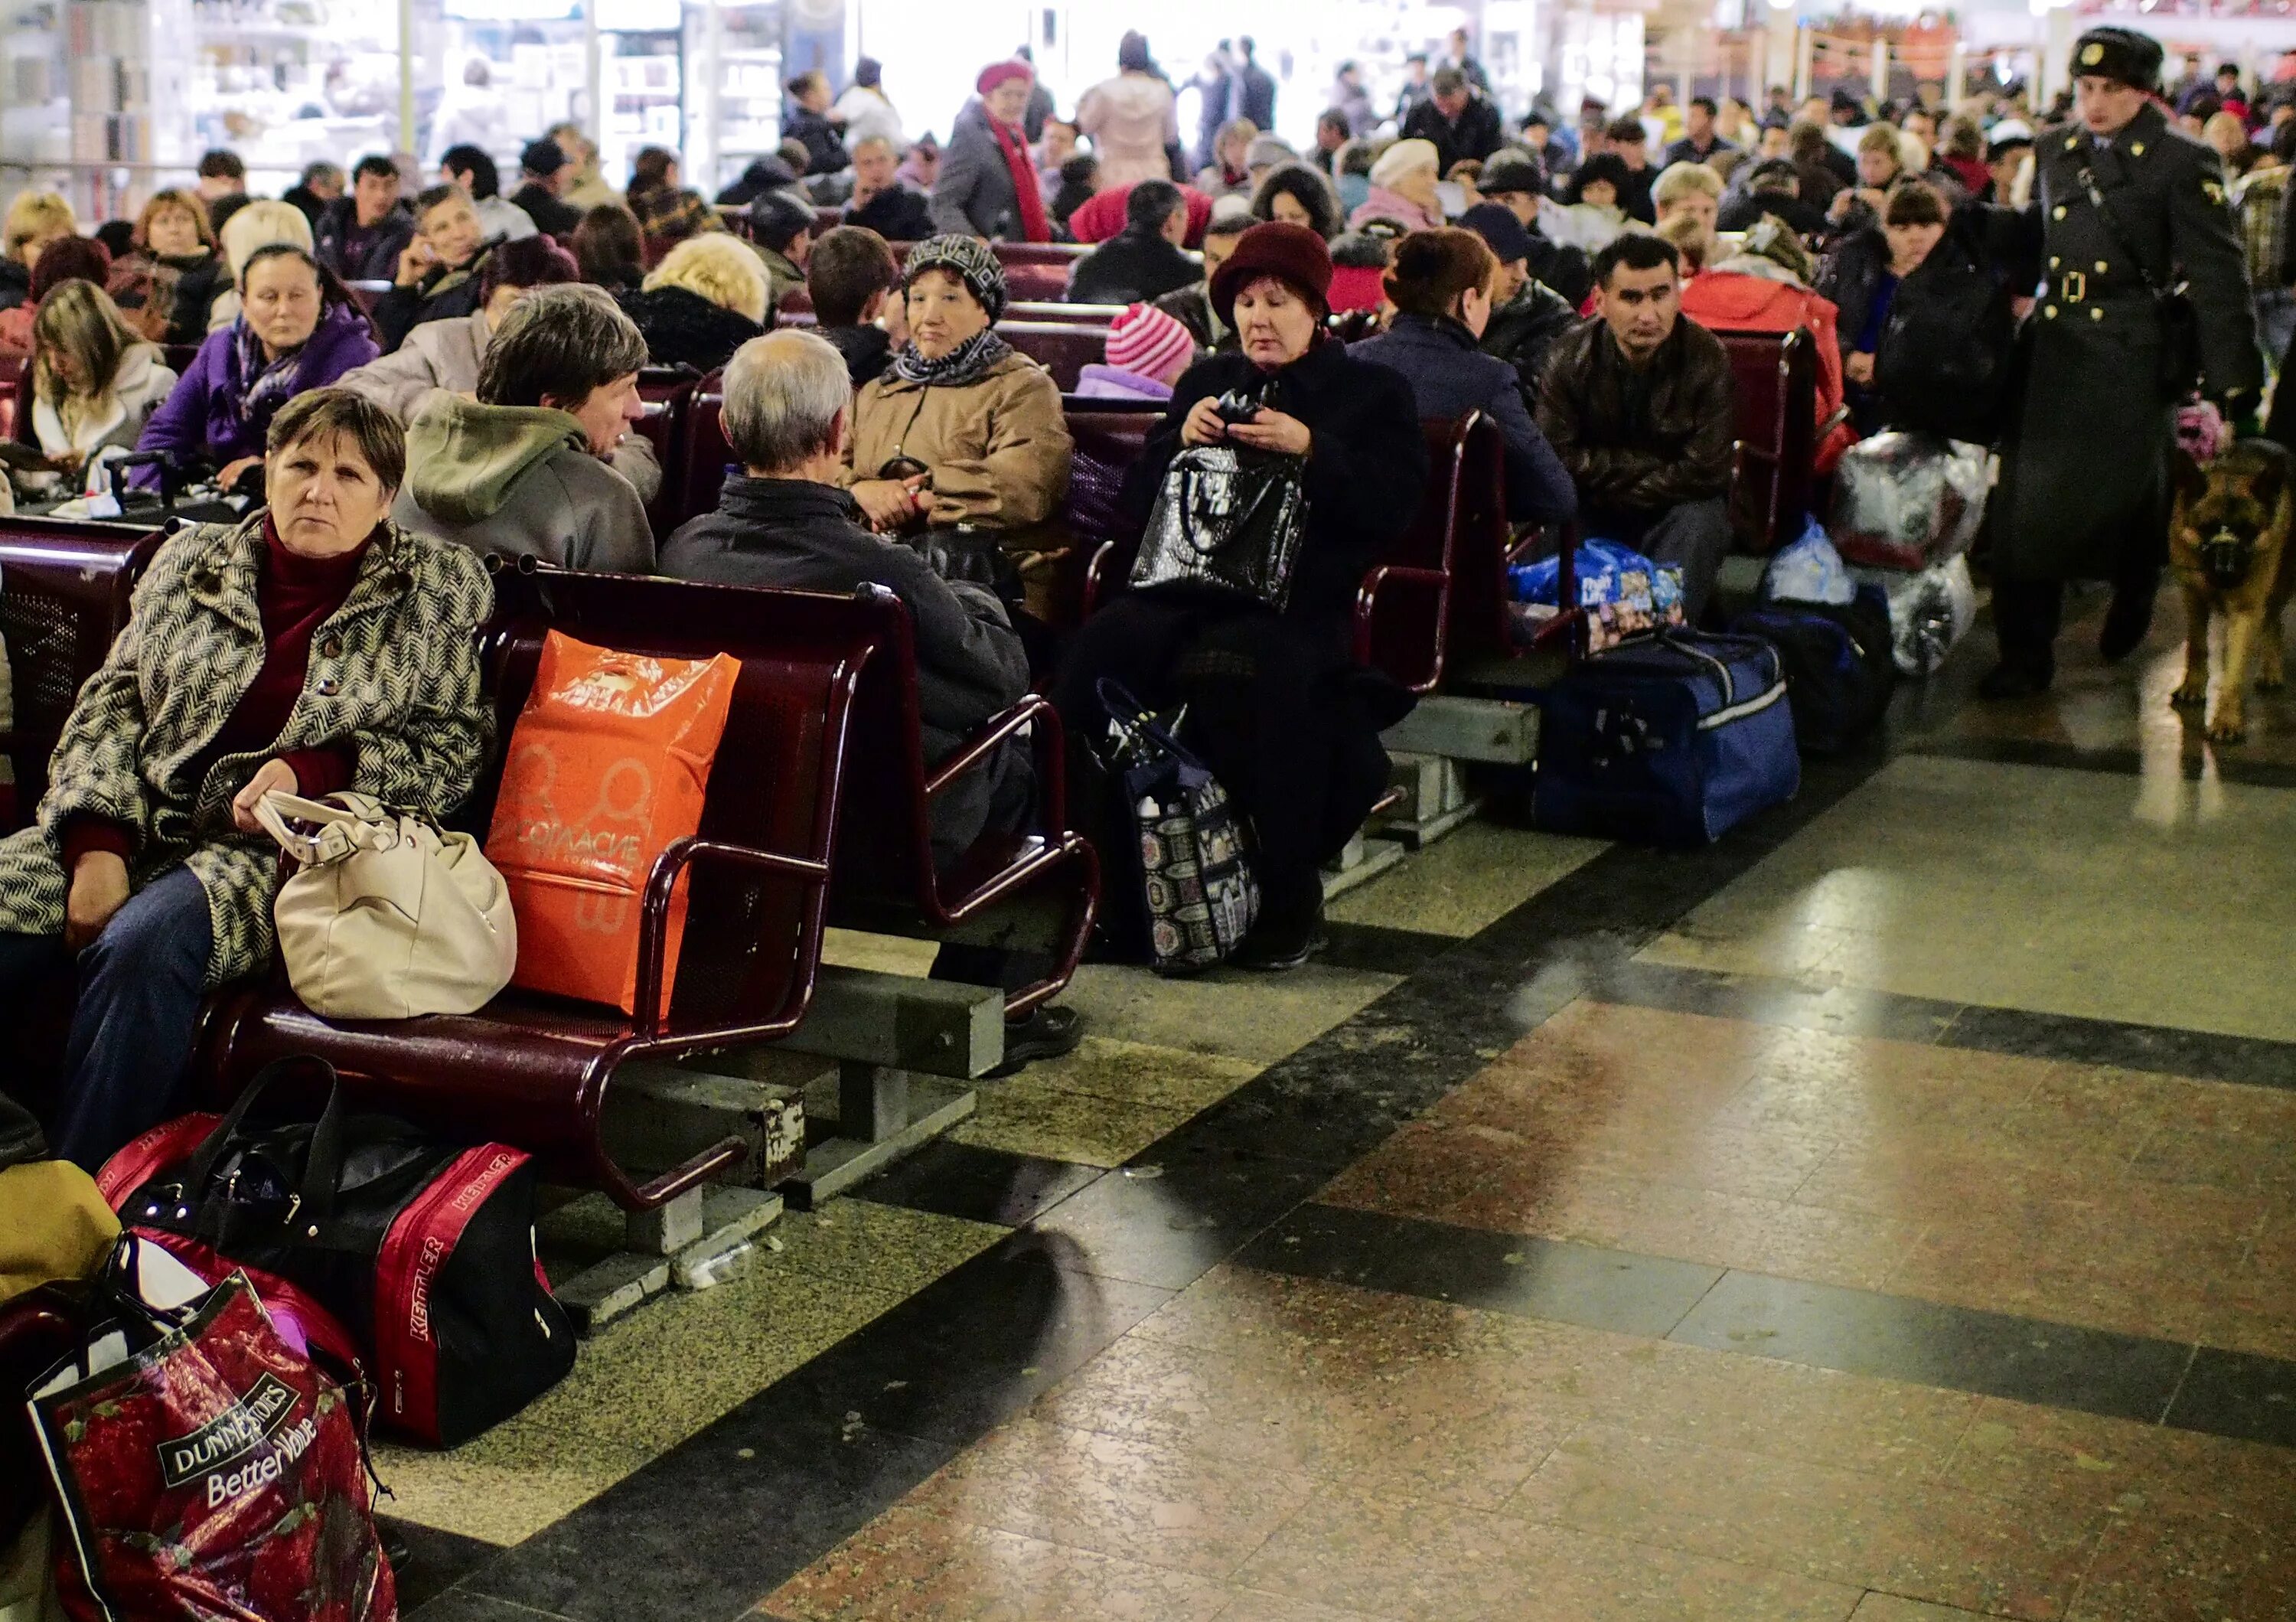 Звук перед объявлением на вокзале. Казанский вокзал зал ожидания. Люди на вокзале. Пассажиры в зале ожидания. Залы ожидания на вокзале.